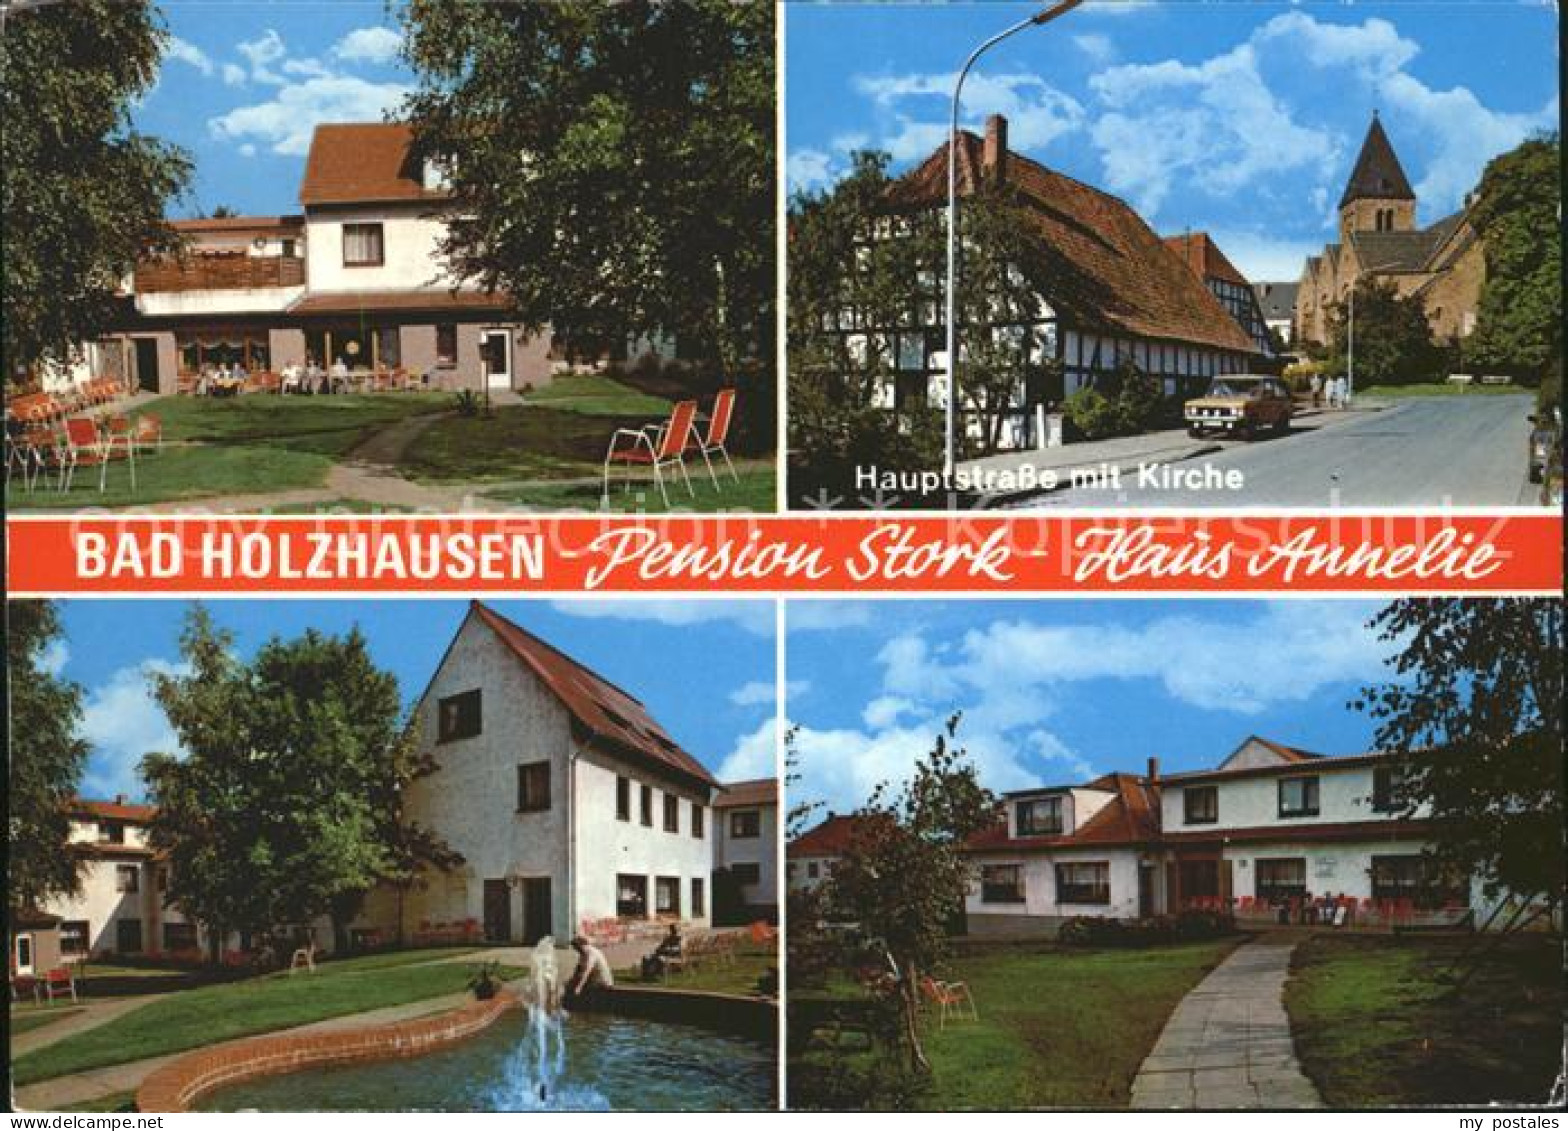 72308401 Bad Holzhausen Luebbecke Pension Stork Haus Annelie Hauptstr Kirche Bru - Getmold